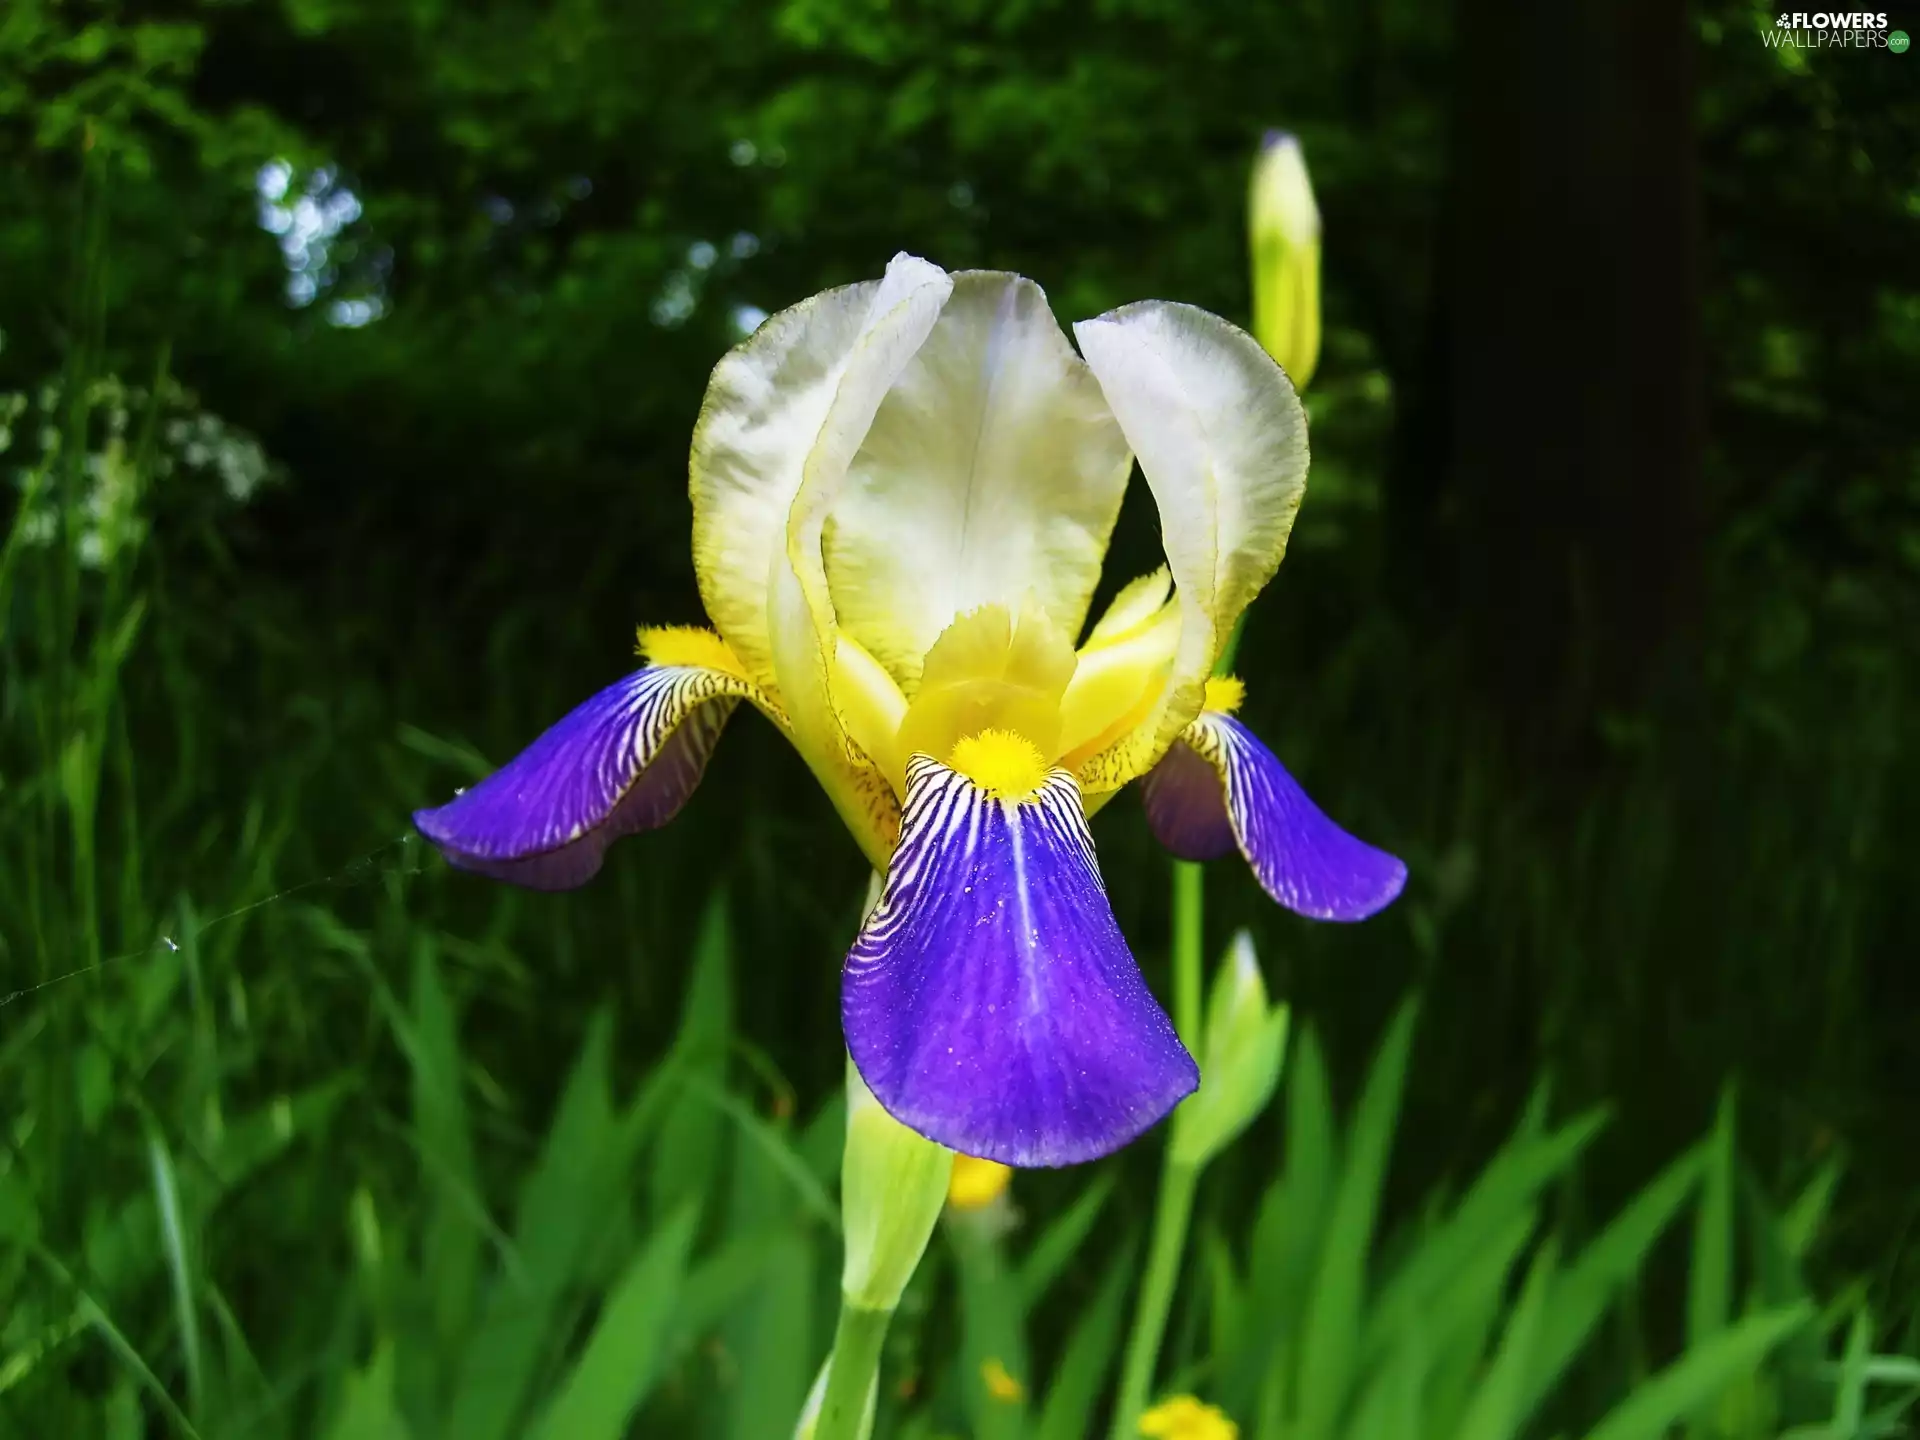 iris, grass